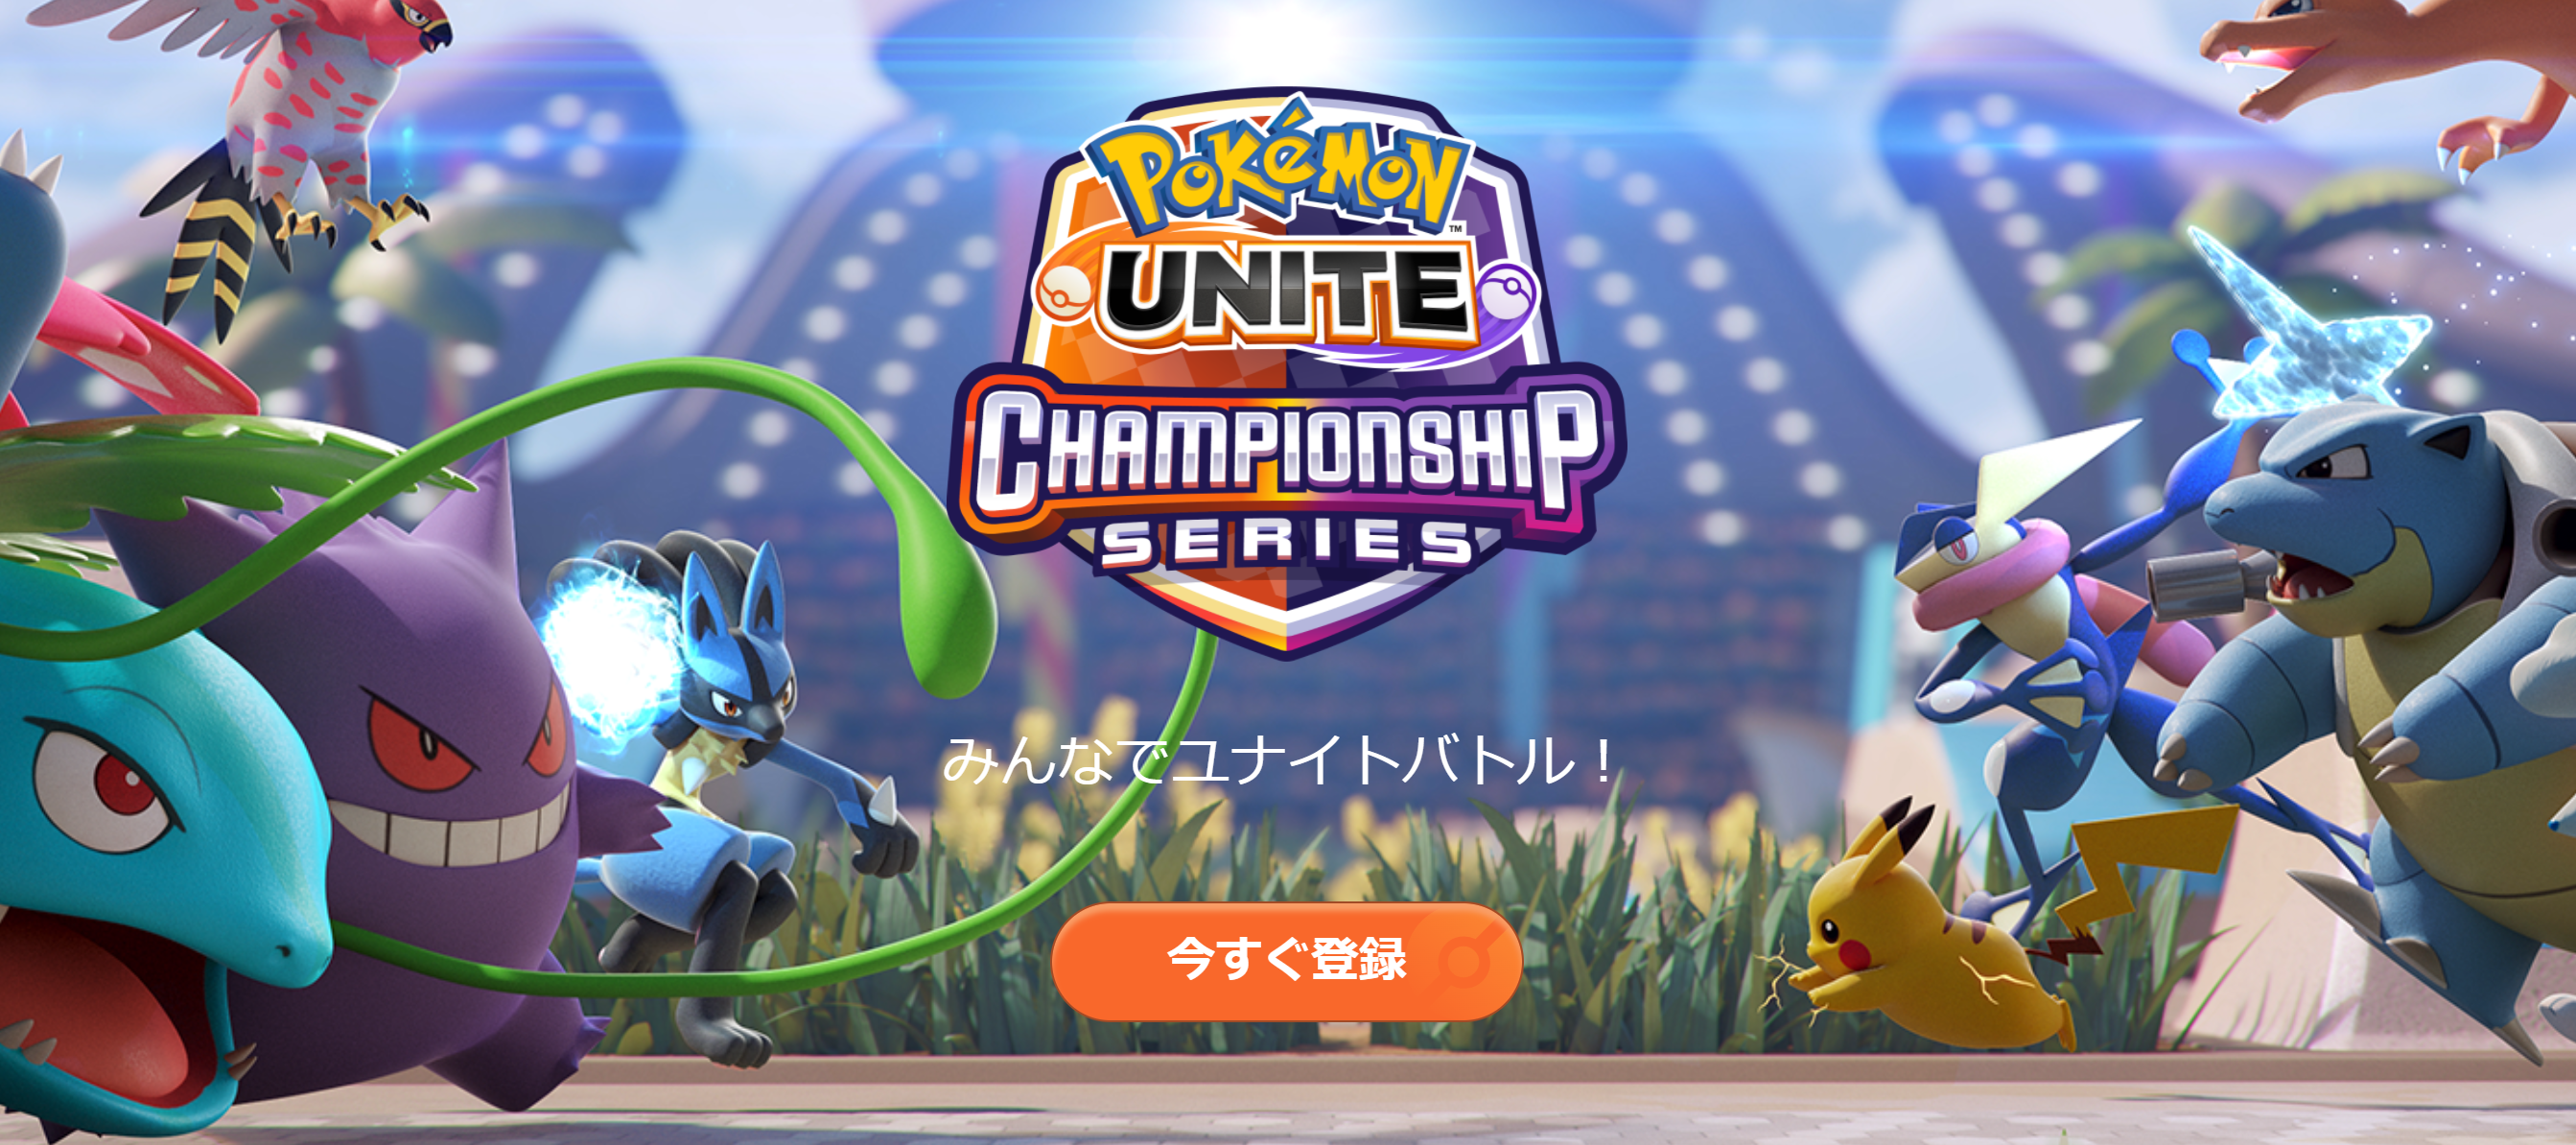 ポケモンユナイト ワールドチャンピオンシップス22 チーム登録 エントリー方法 Pokemon Unite 公式サイト